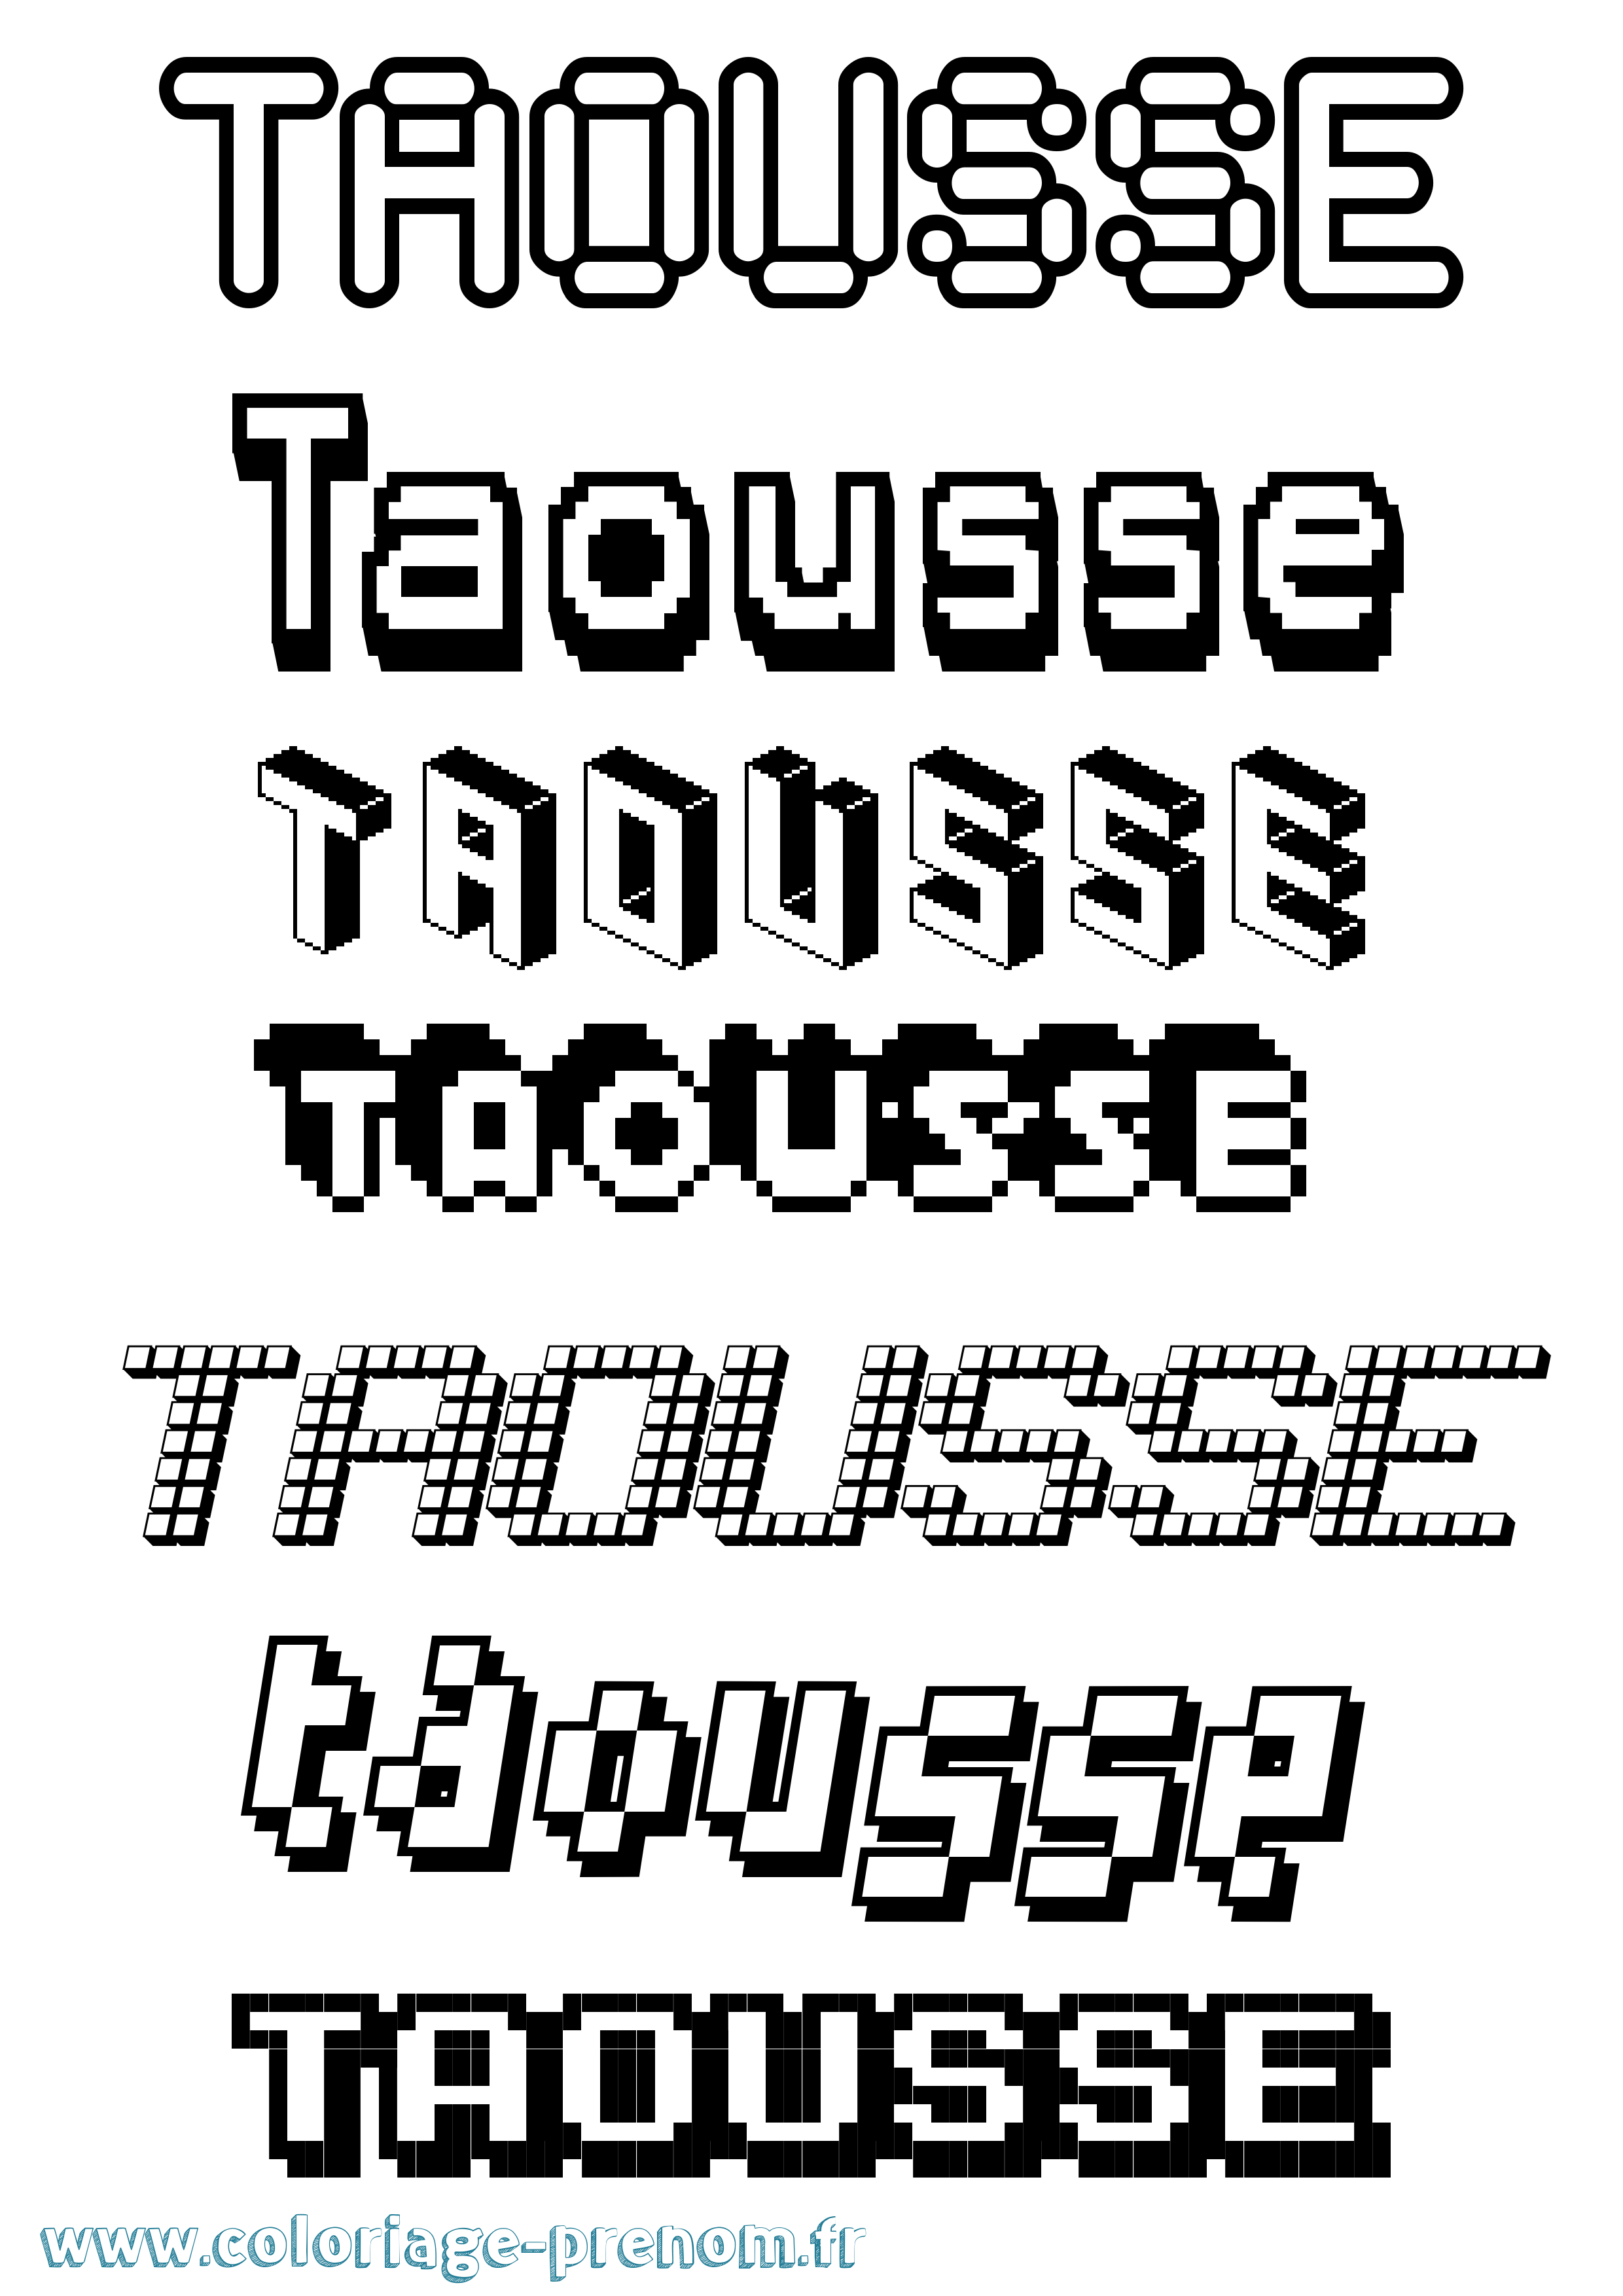 Coloriage prénom Taousse Pixel